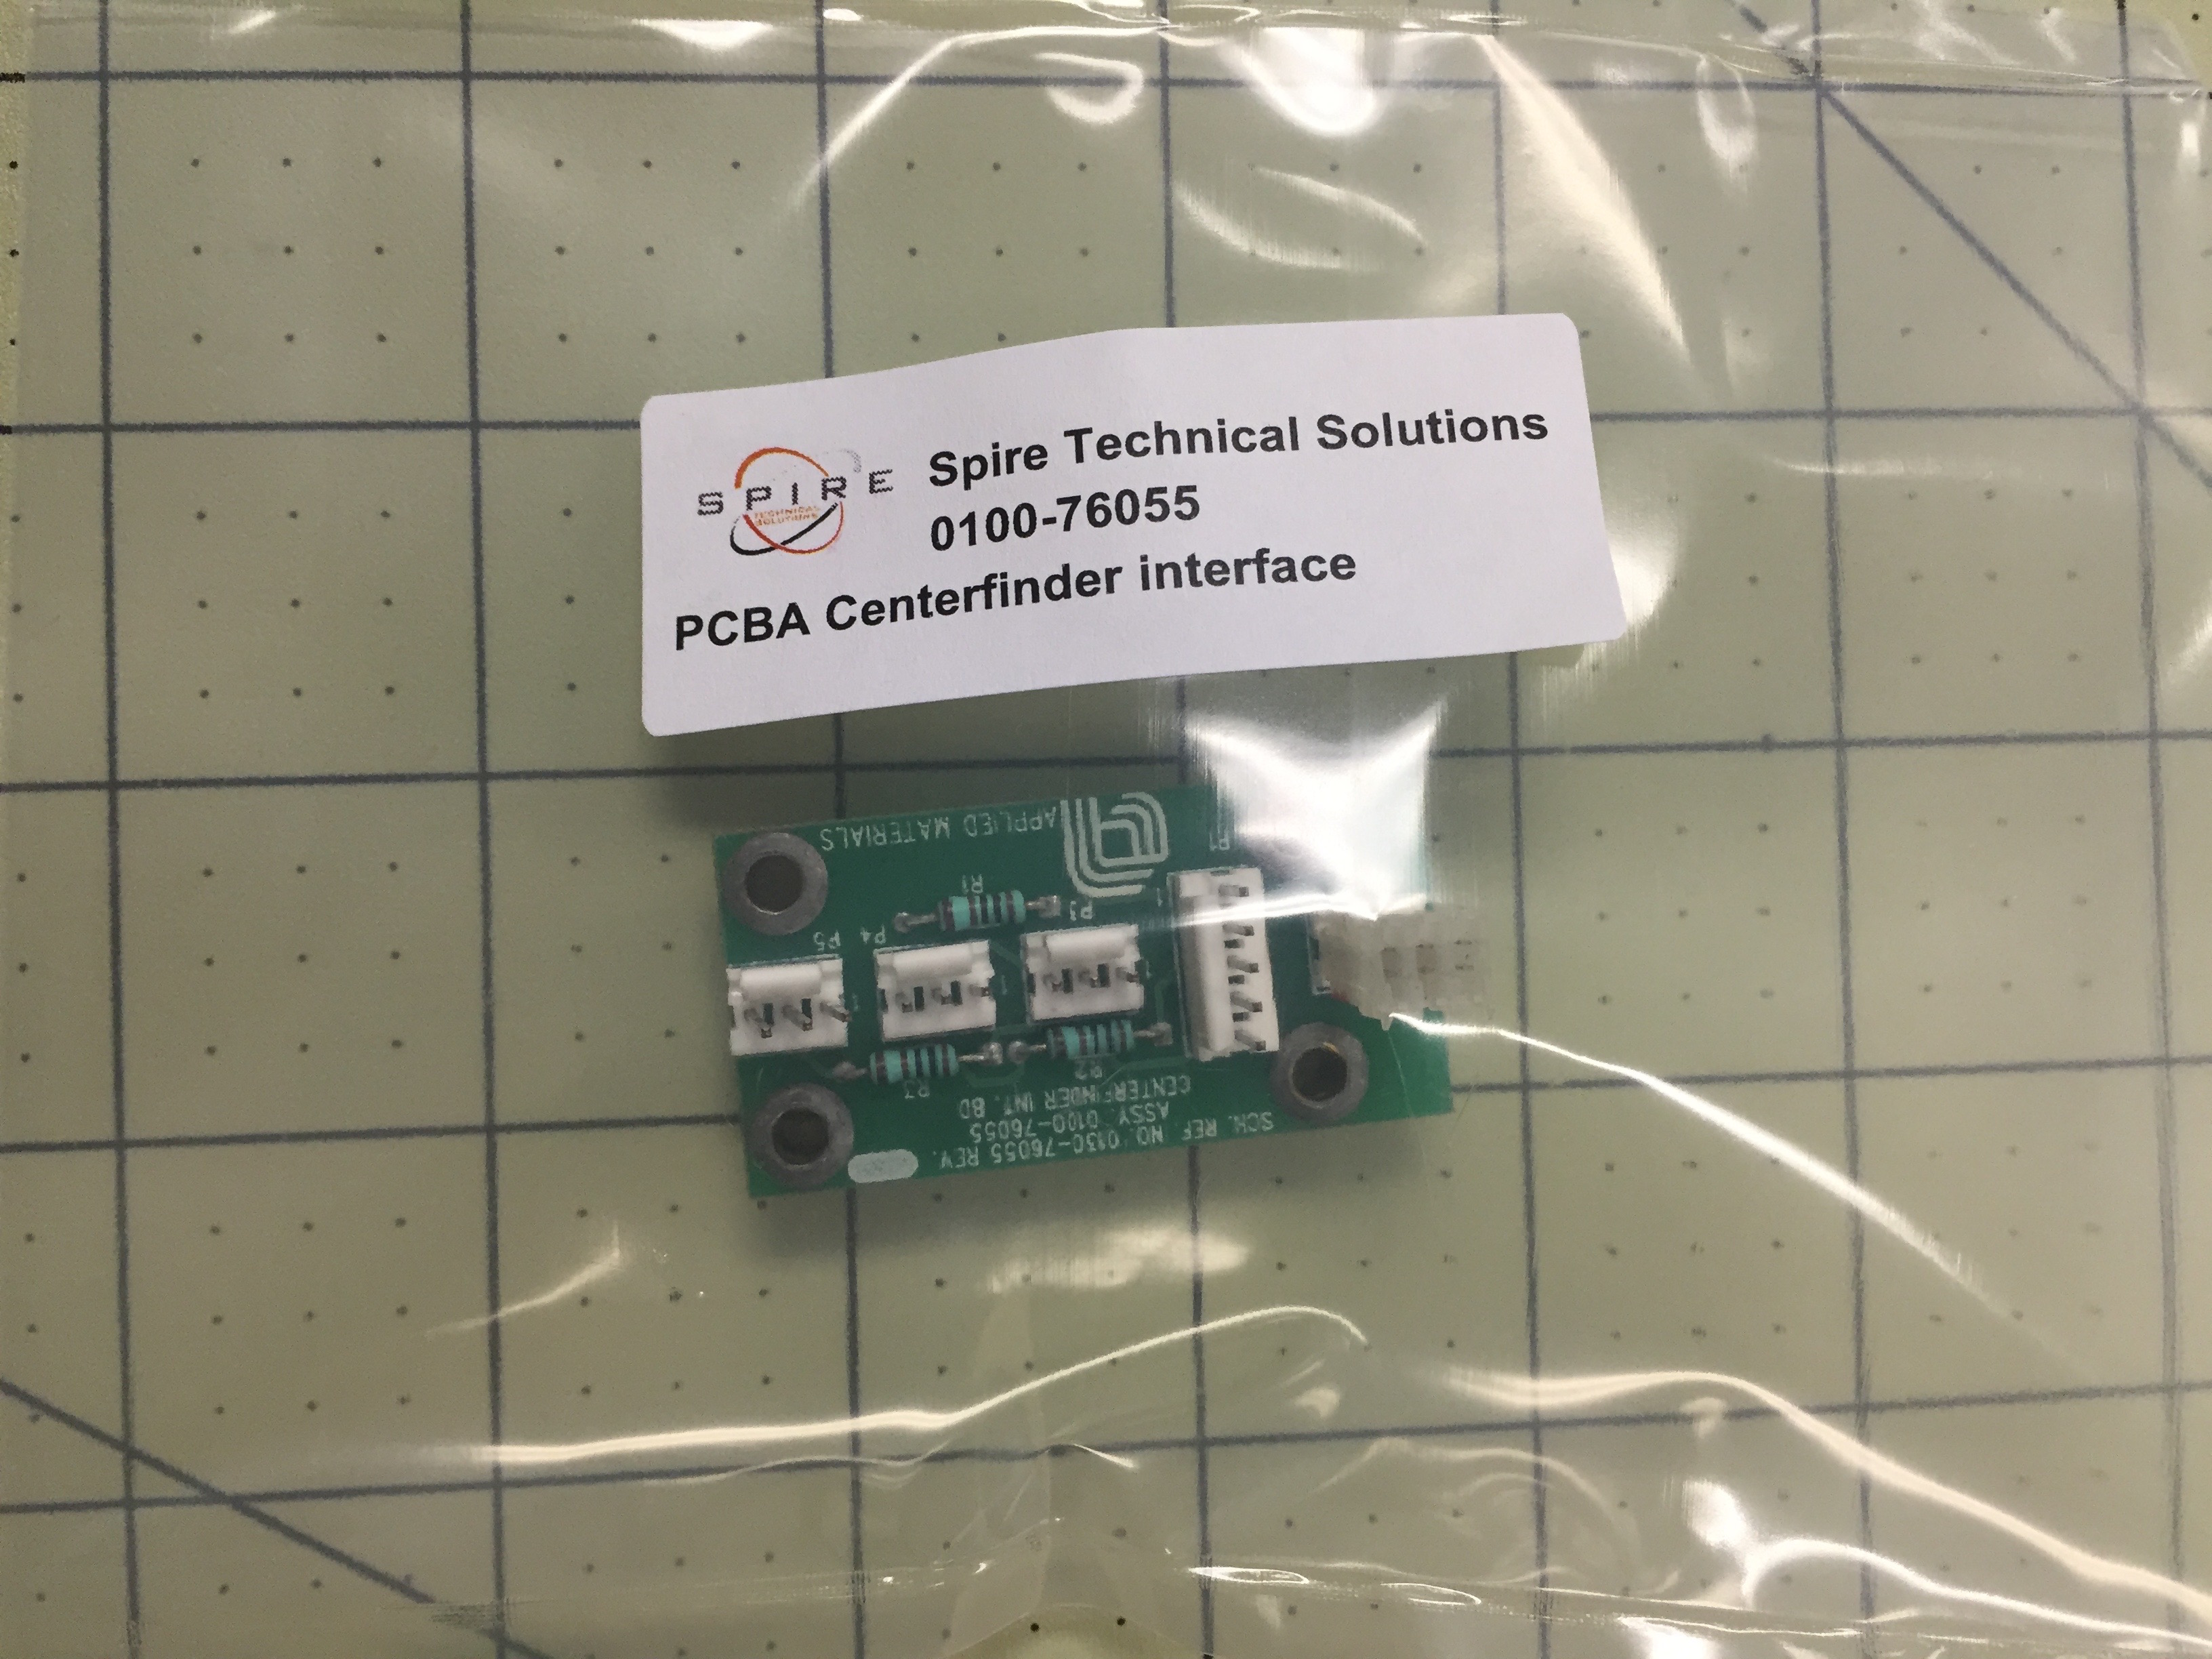 PCBA Centerfinder interface